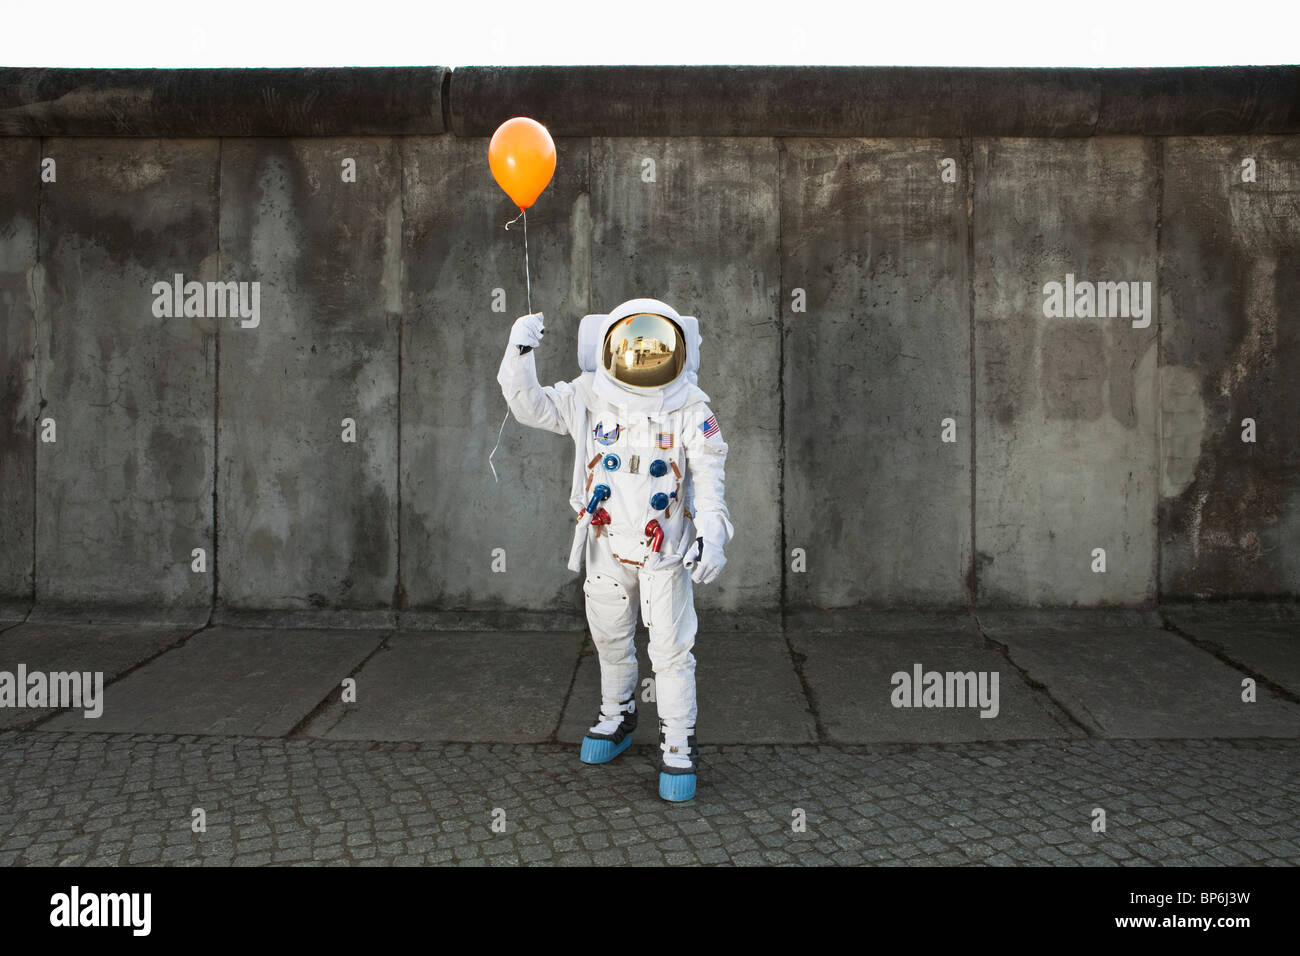 Un astronauta en un ciudad acera sujetando un globo Foto de stock